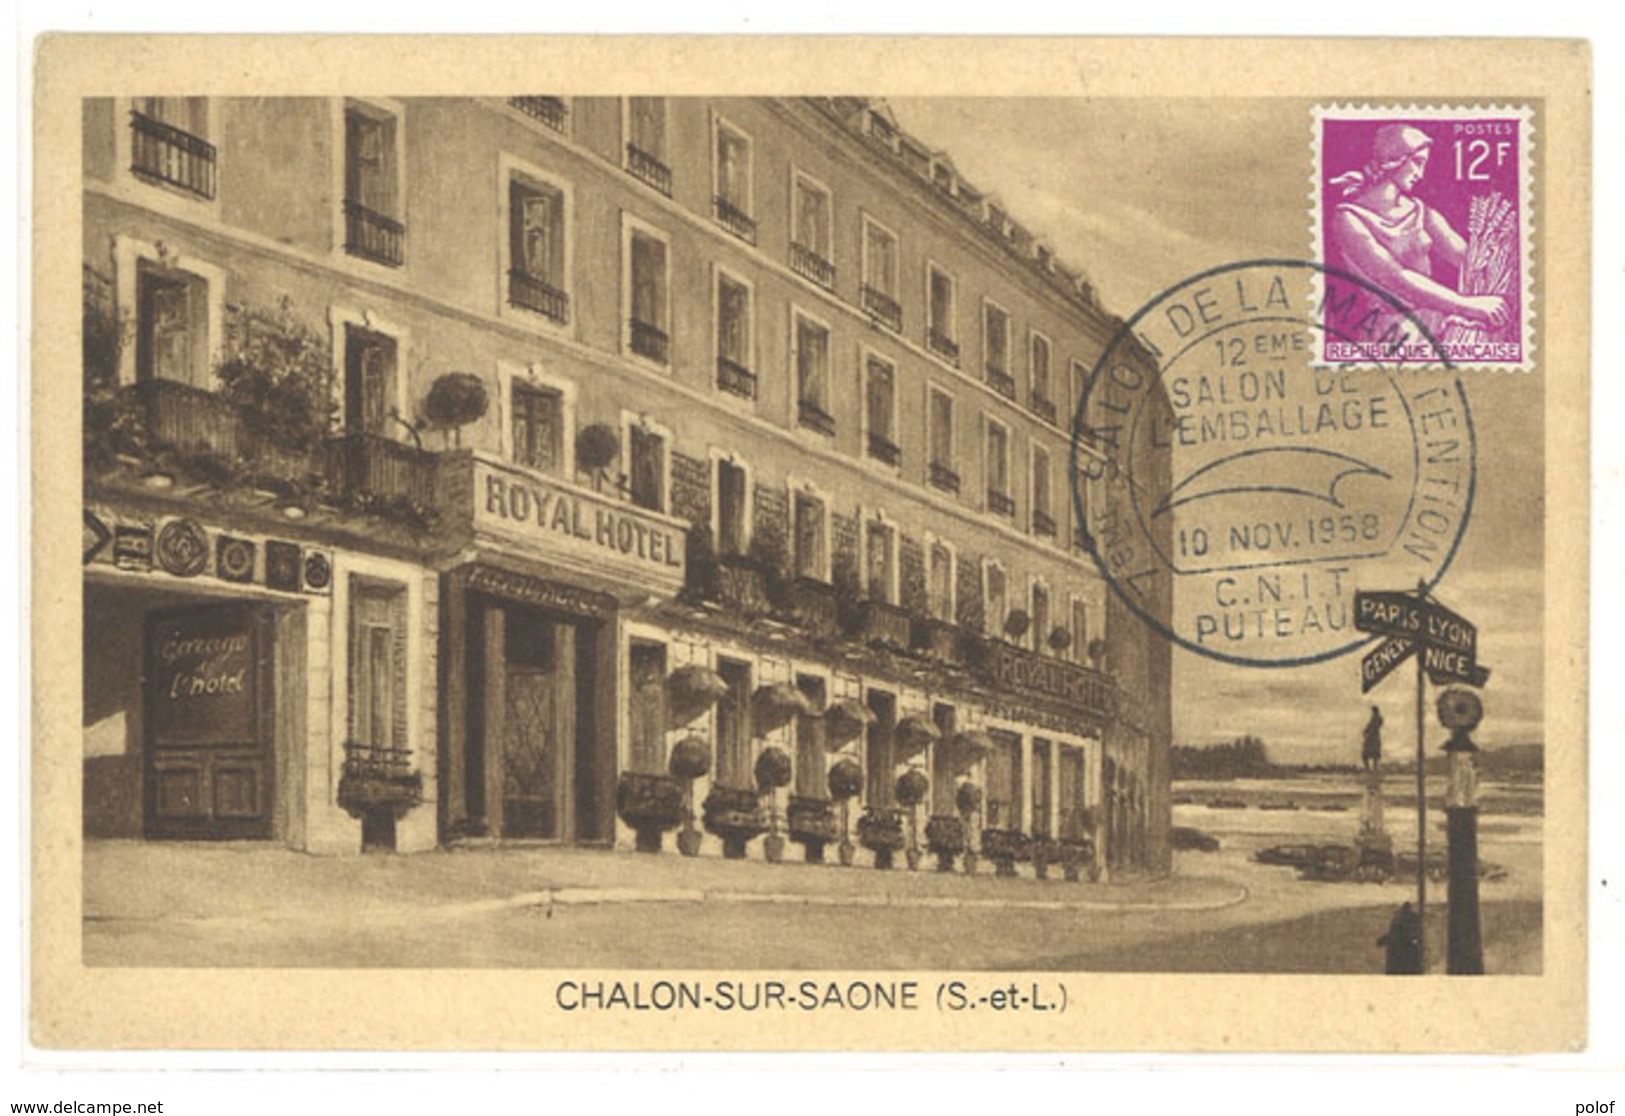 CHALON SUR SAONE - Royal Hotel - Cachet Postal Du Salon De La Manutention - PUTEAUX   (111674) - Chalon Sur Saone